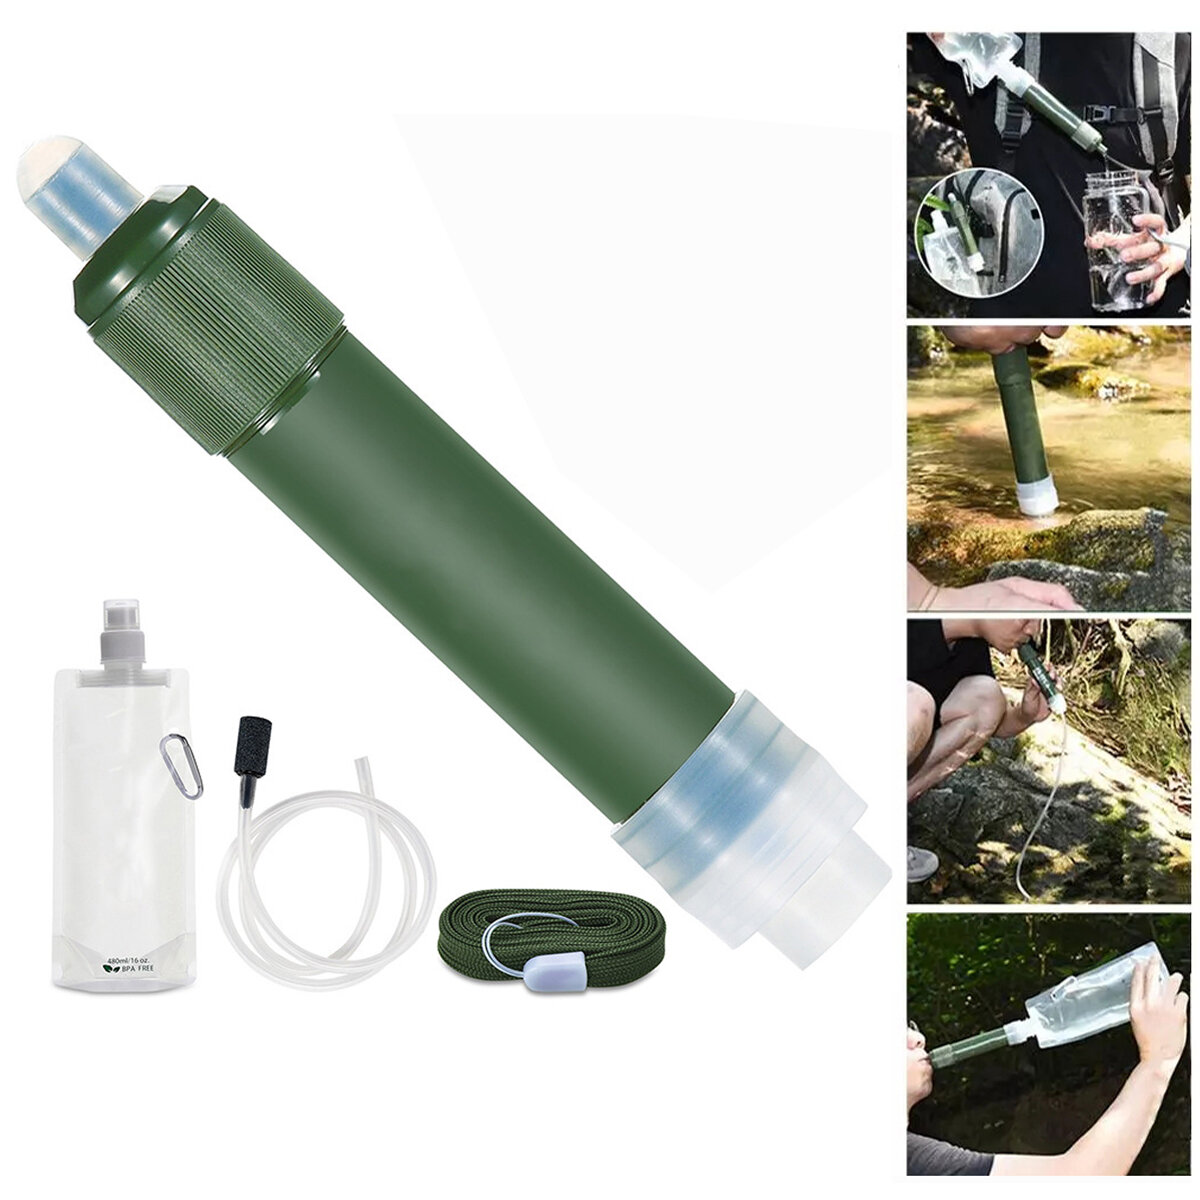 Filtro per l'acqua per esterni Sistema di filtrazione portatile per depuratore d'acqua a 2 stadi Attrezzatura di sopravvivenza per campeggio Escursionismo Arrampicata